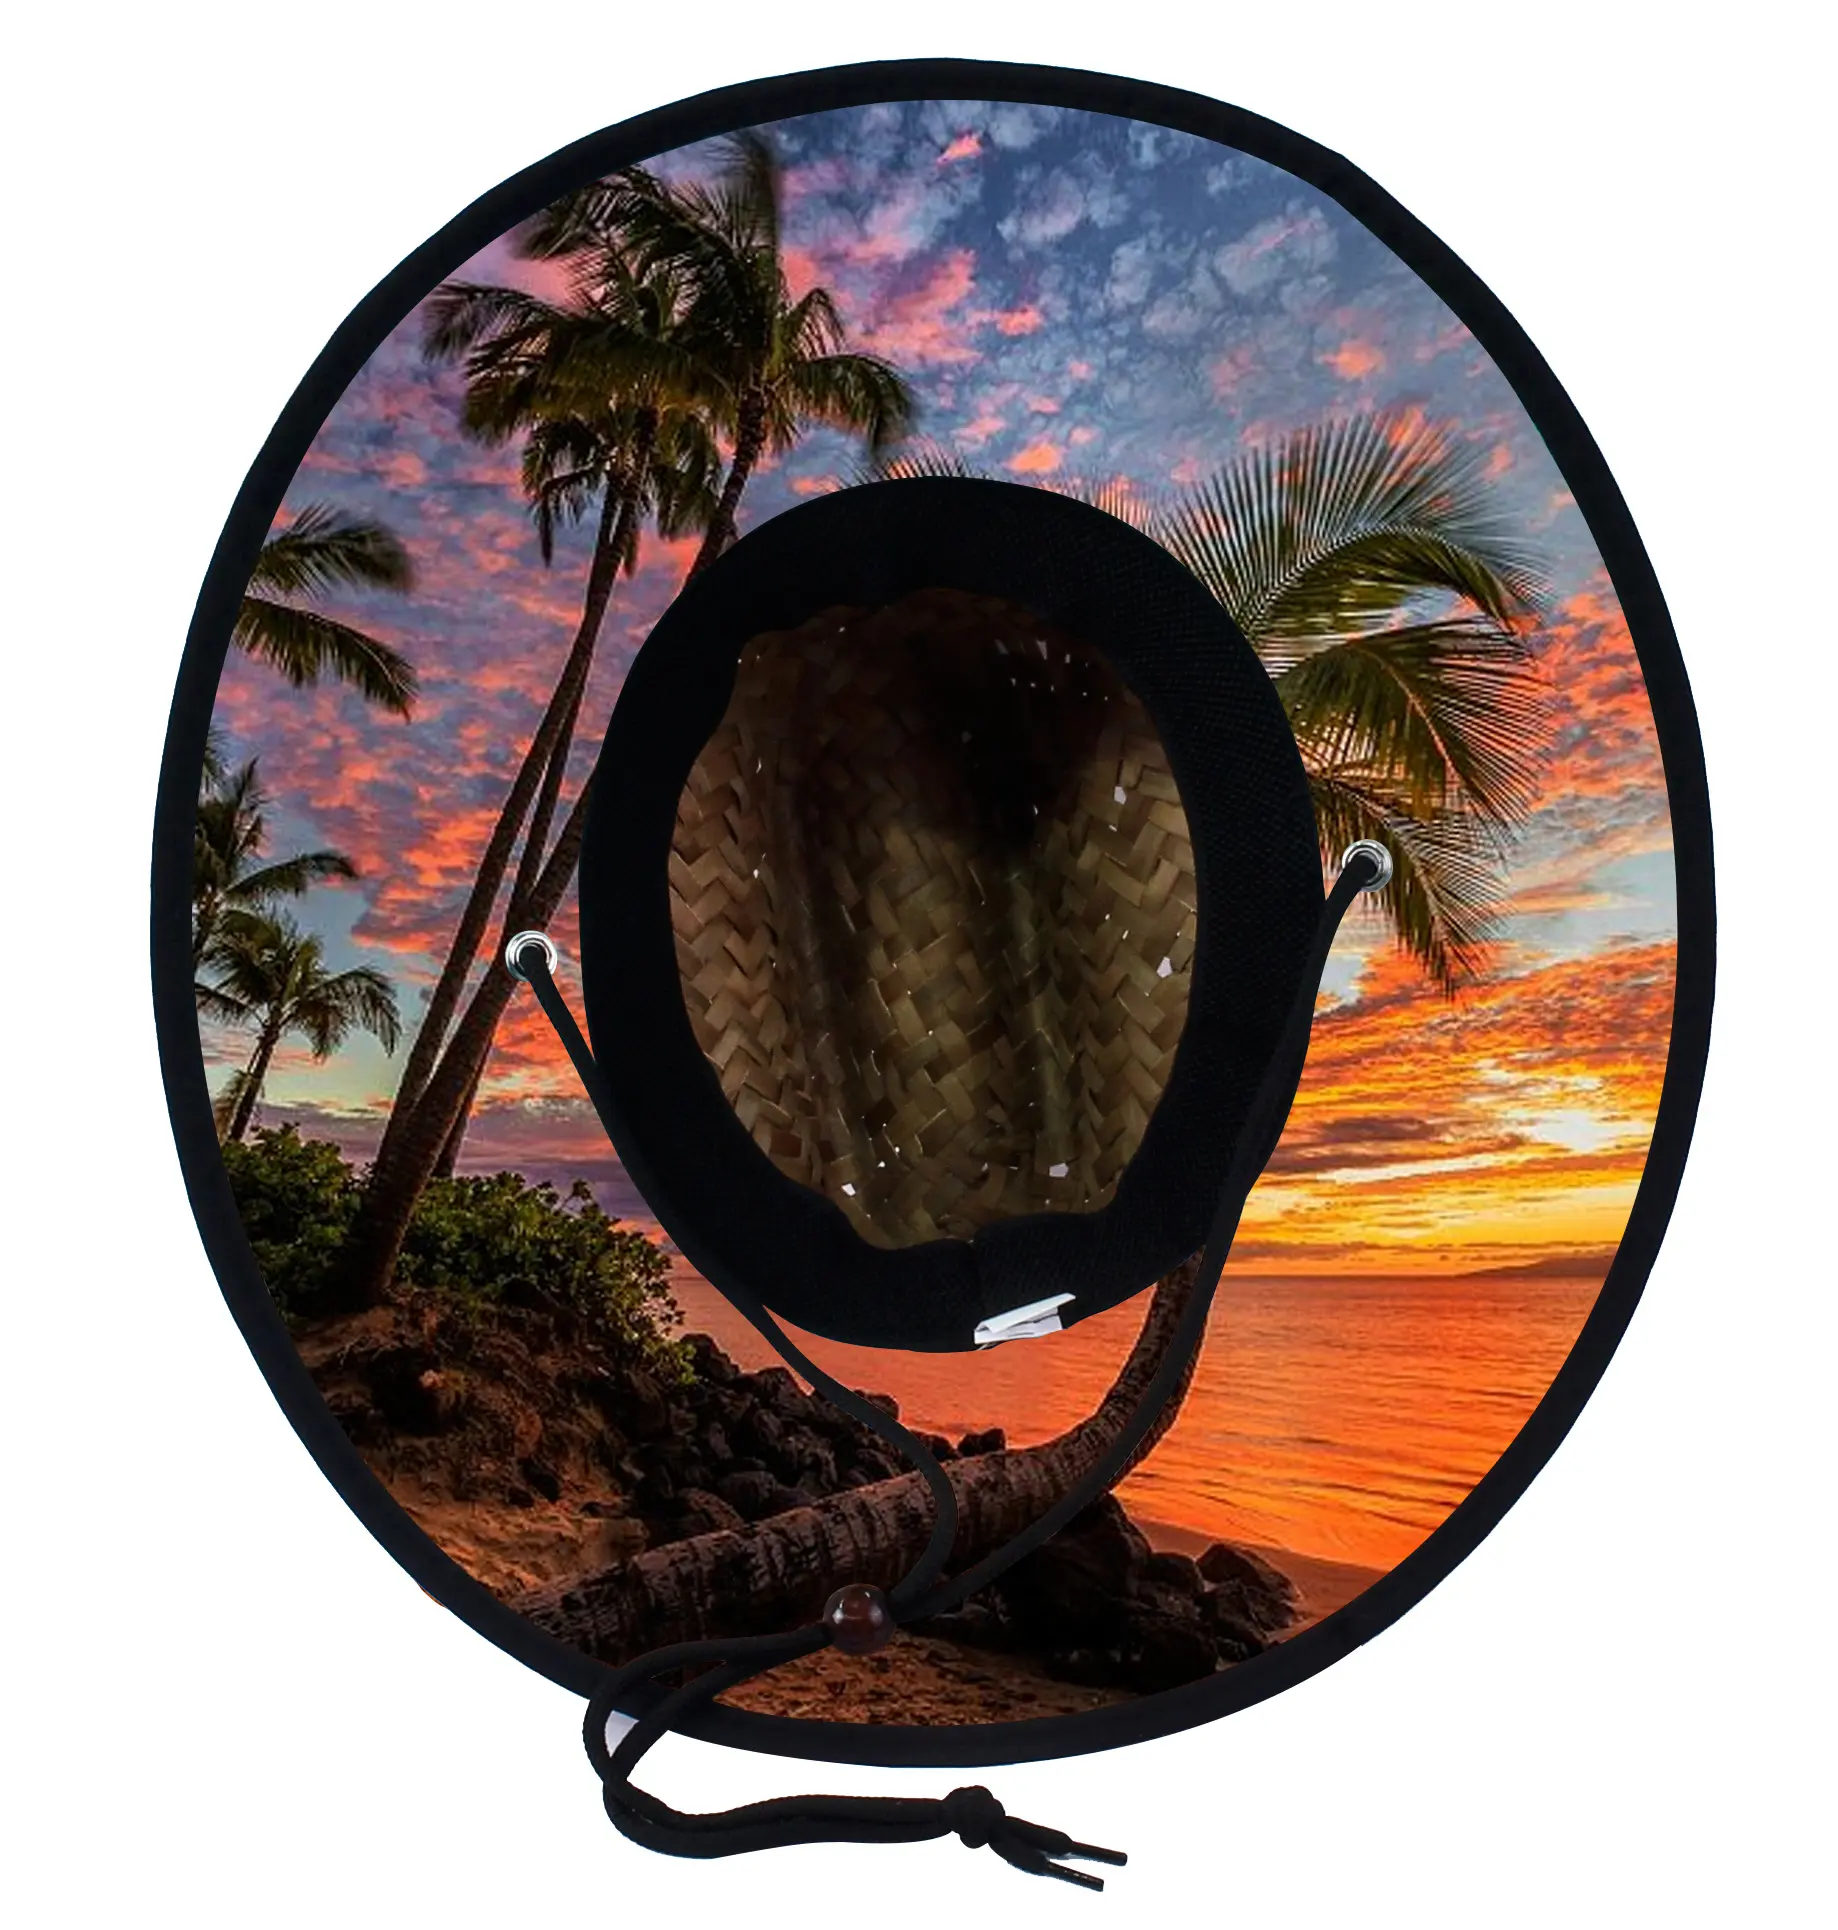 Toptan yaz cankurtaran hasır şapka altında ağız özel baskı amerika Sombrero logo ile plaj şapkası sörf cankurtaran hasır şapka